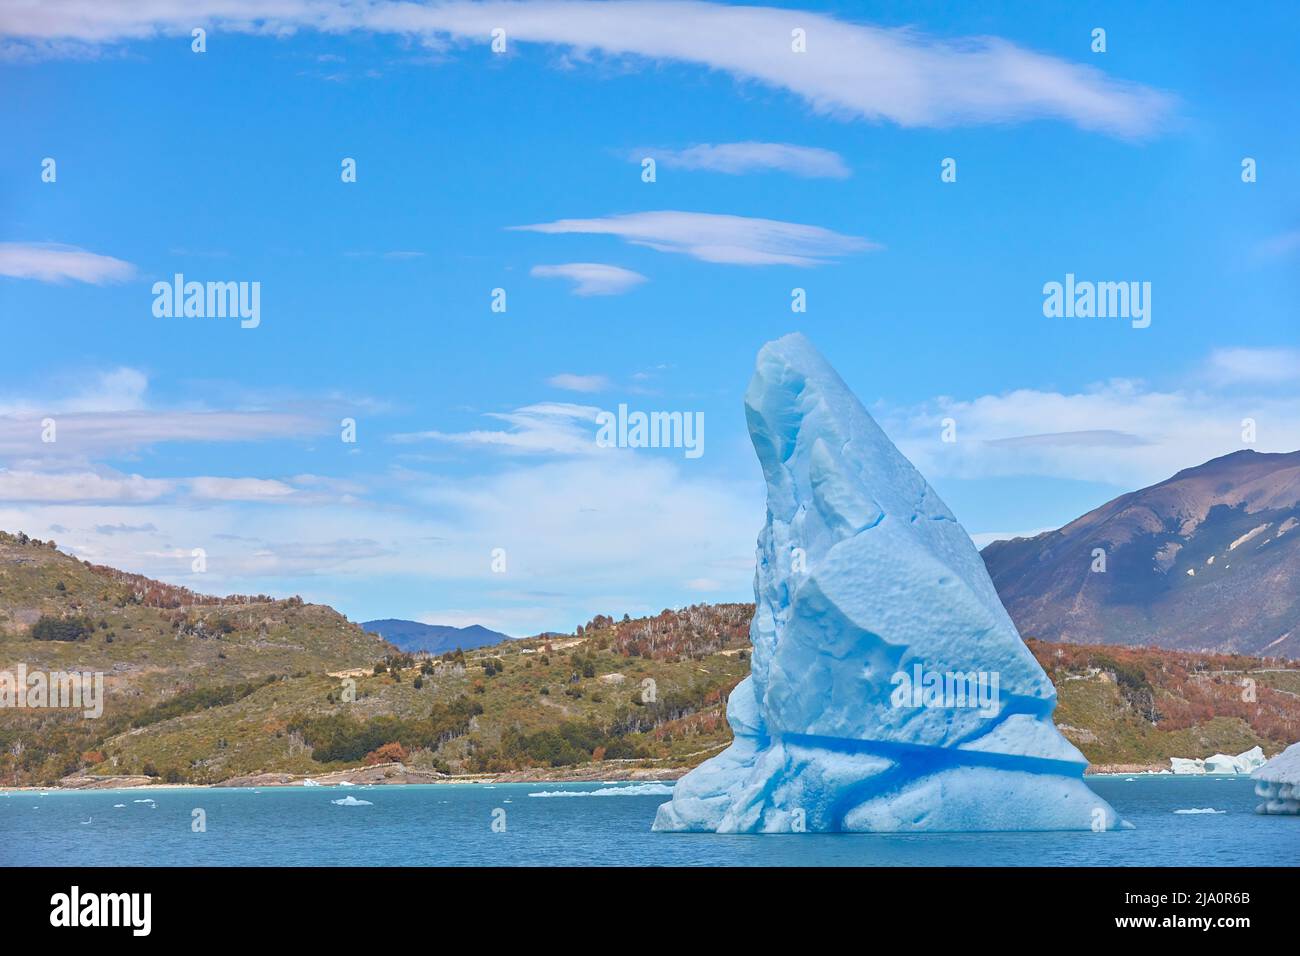 Un grande iceberg blu staccato dal ghiacciaio Perito Moreno nella baia del 'Canal de los Tempanos', il Parco Nazionale Los Glaciares, Santa Cruz, Argentina. Foto Stock